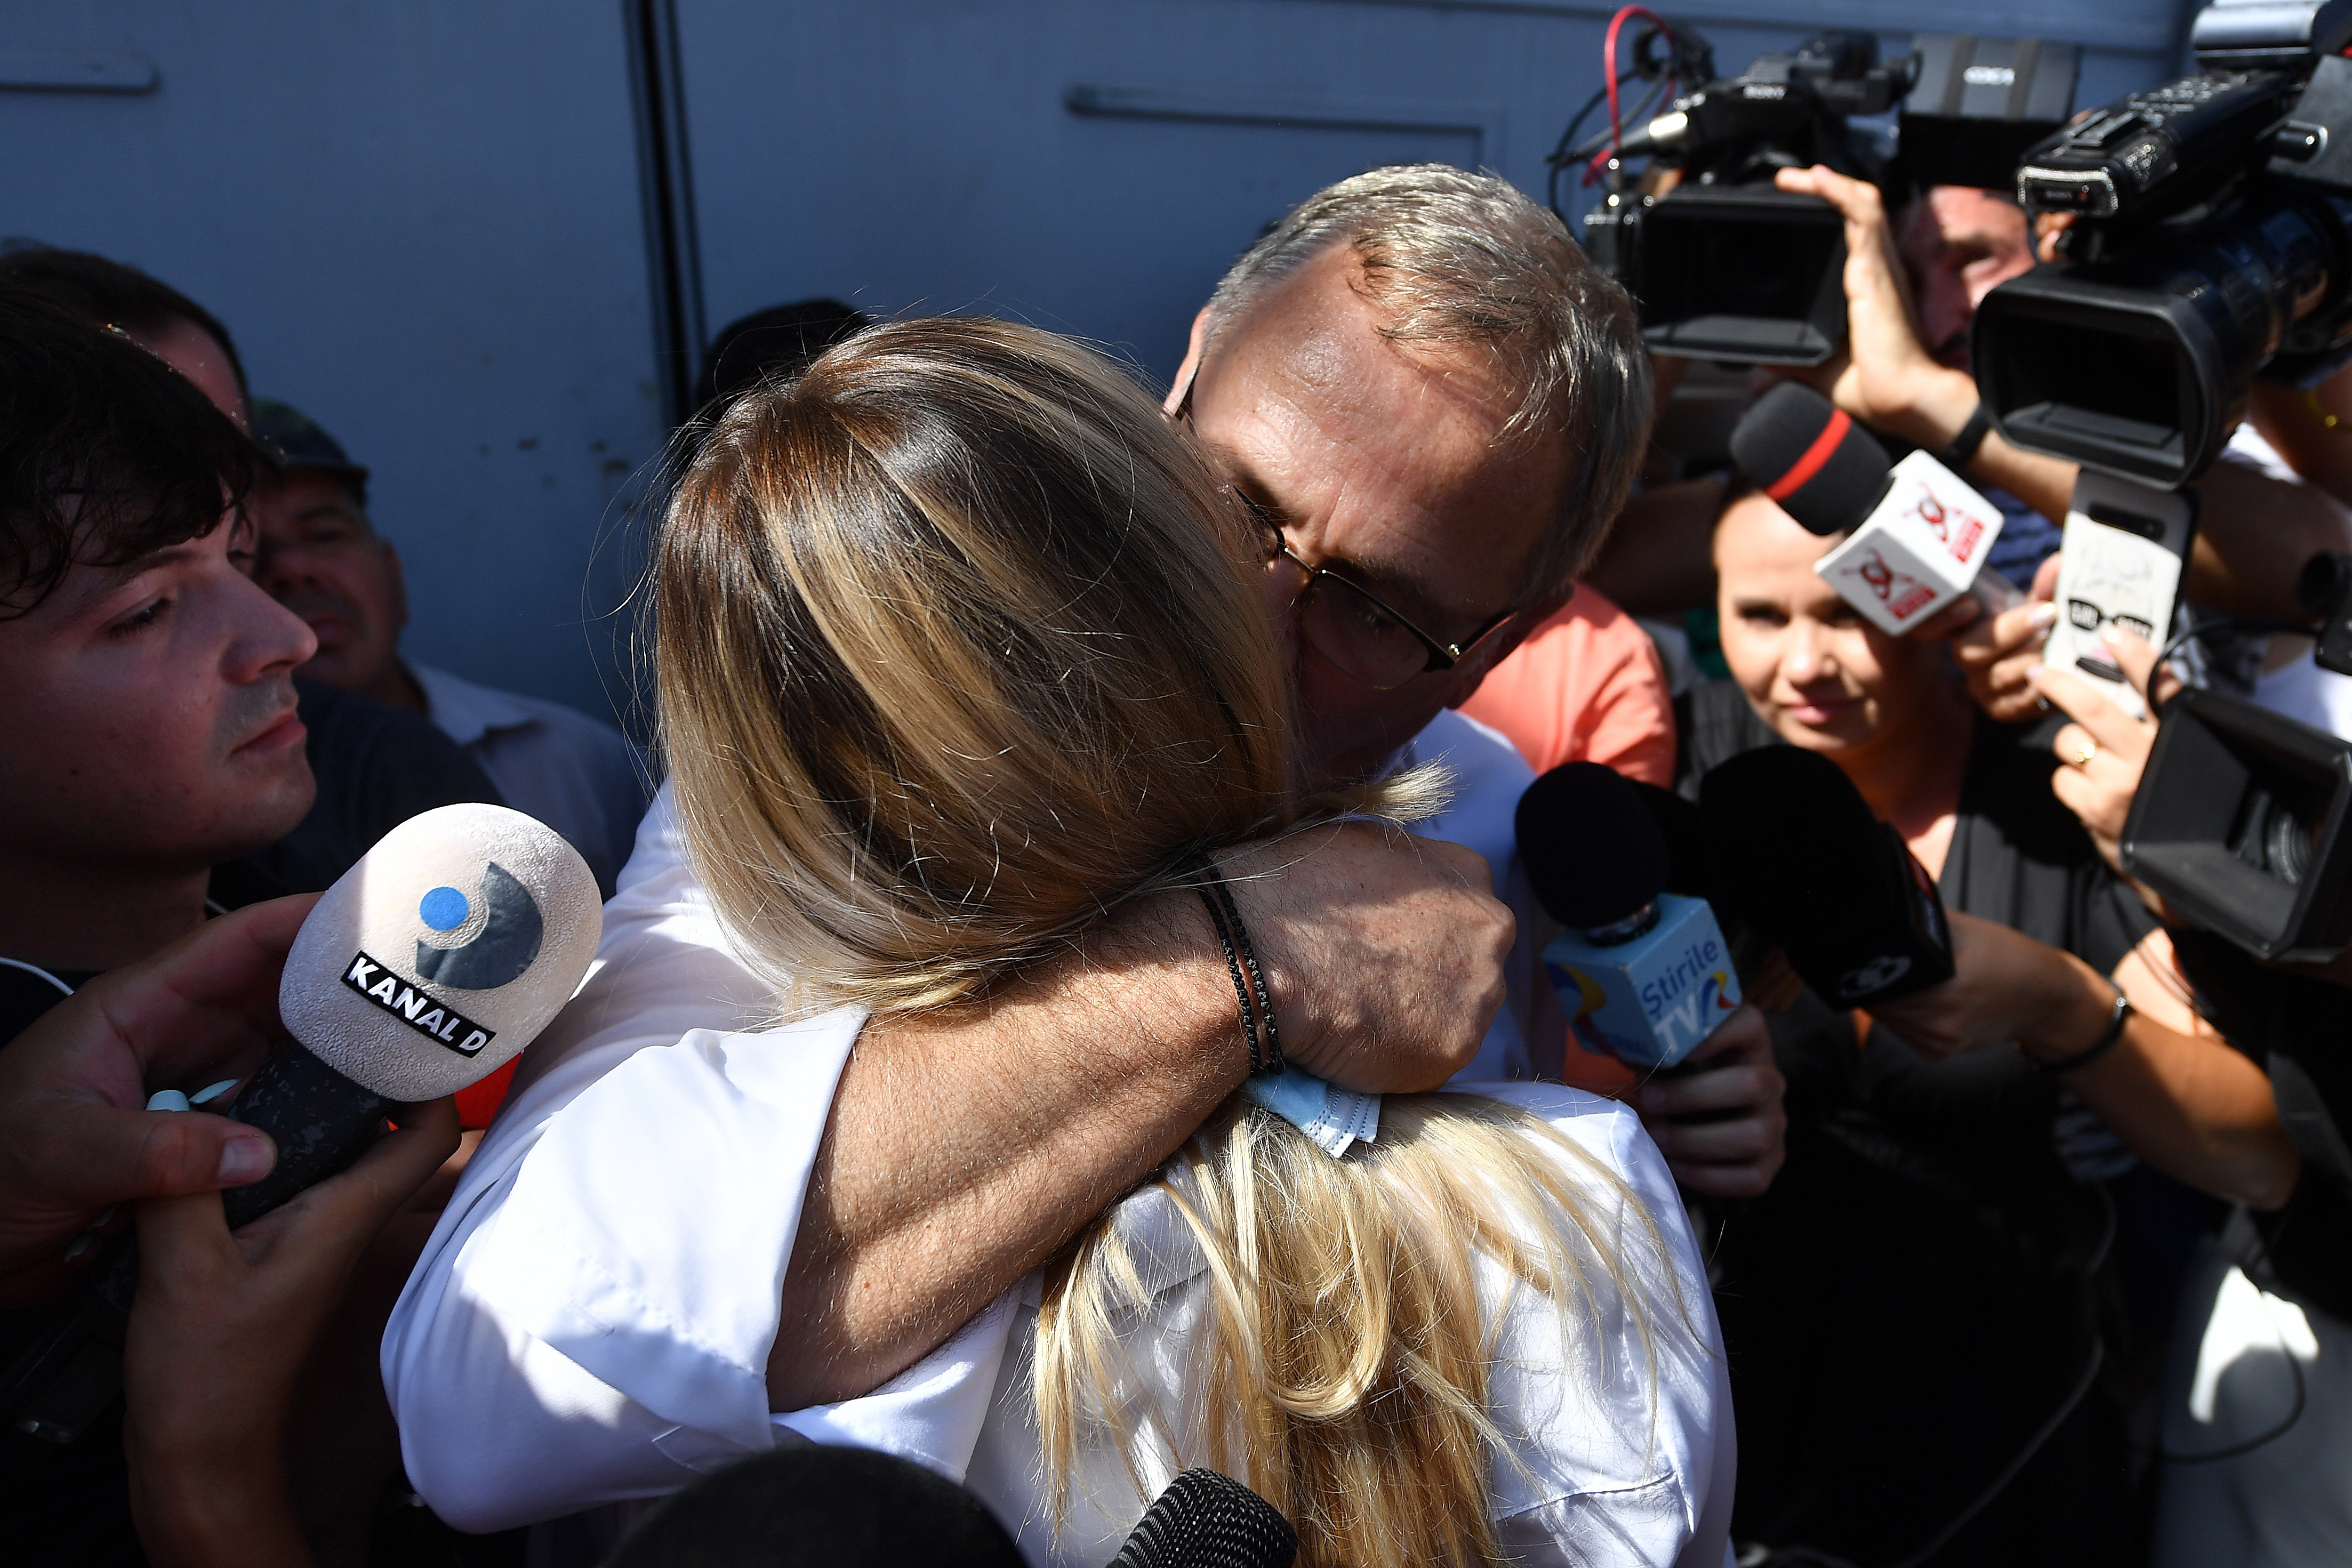 Primele declarații ale lui Liviu Dragnea, după ce a fost eliberat: ”O perioadă de suferință, abuzuri și umilință” - Imaginea 3